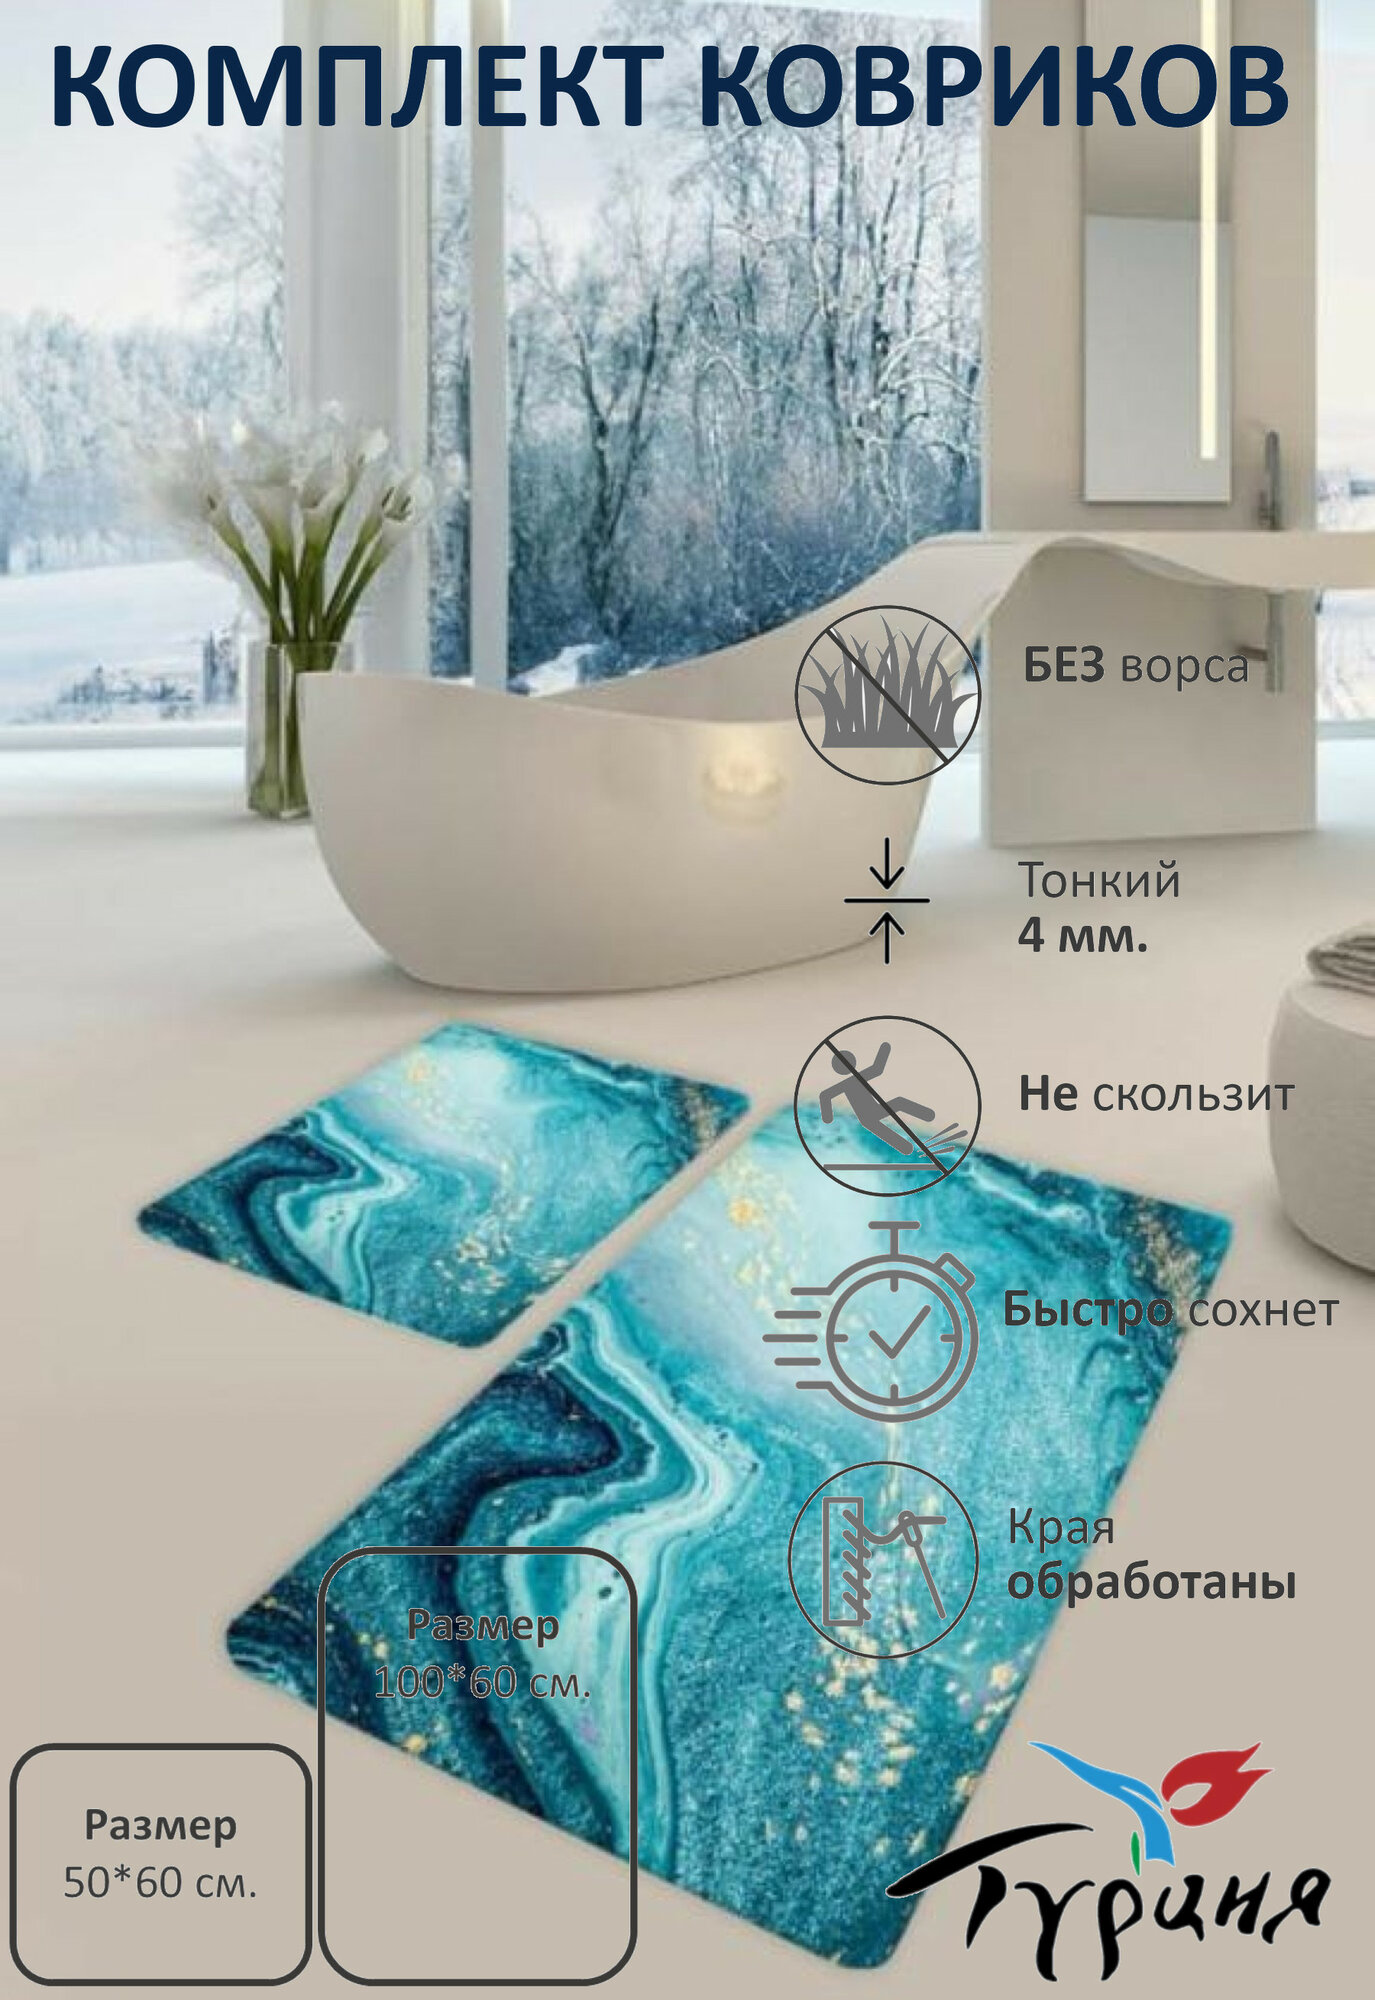 Комплект ковриков для ванной и туалета "Голубой мрамор", 100*60+60*50 см, без ворса. Турция